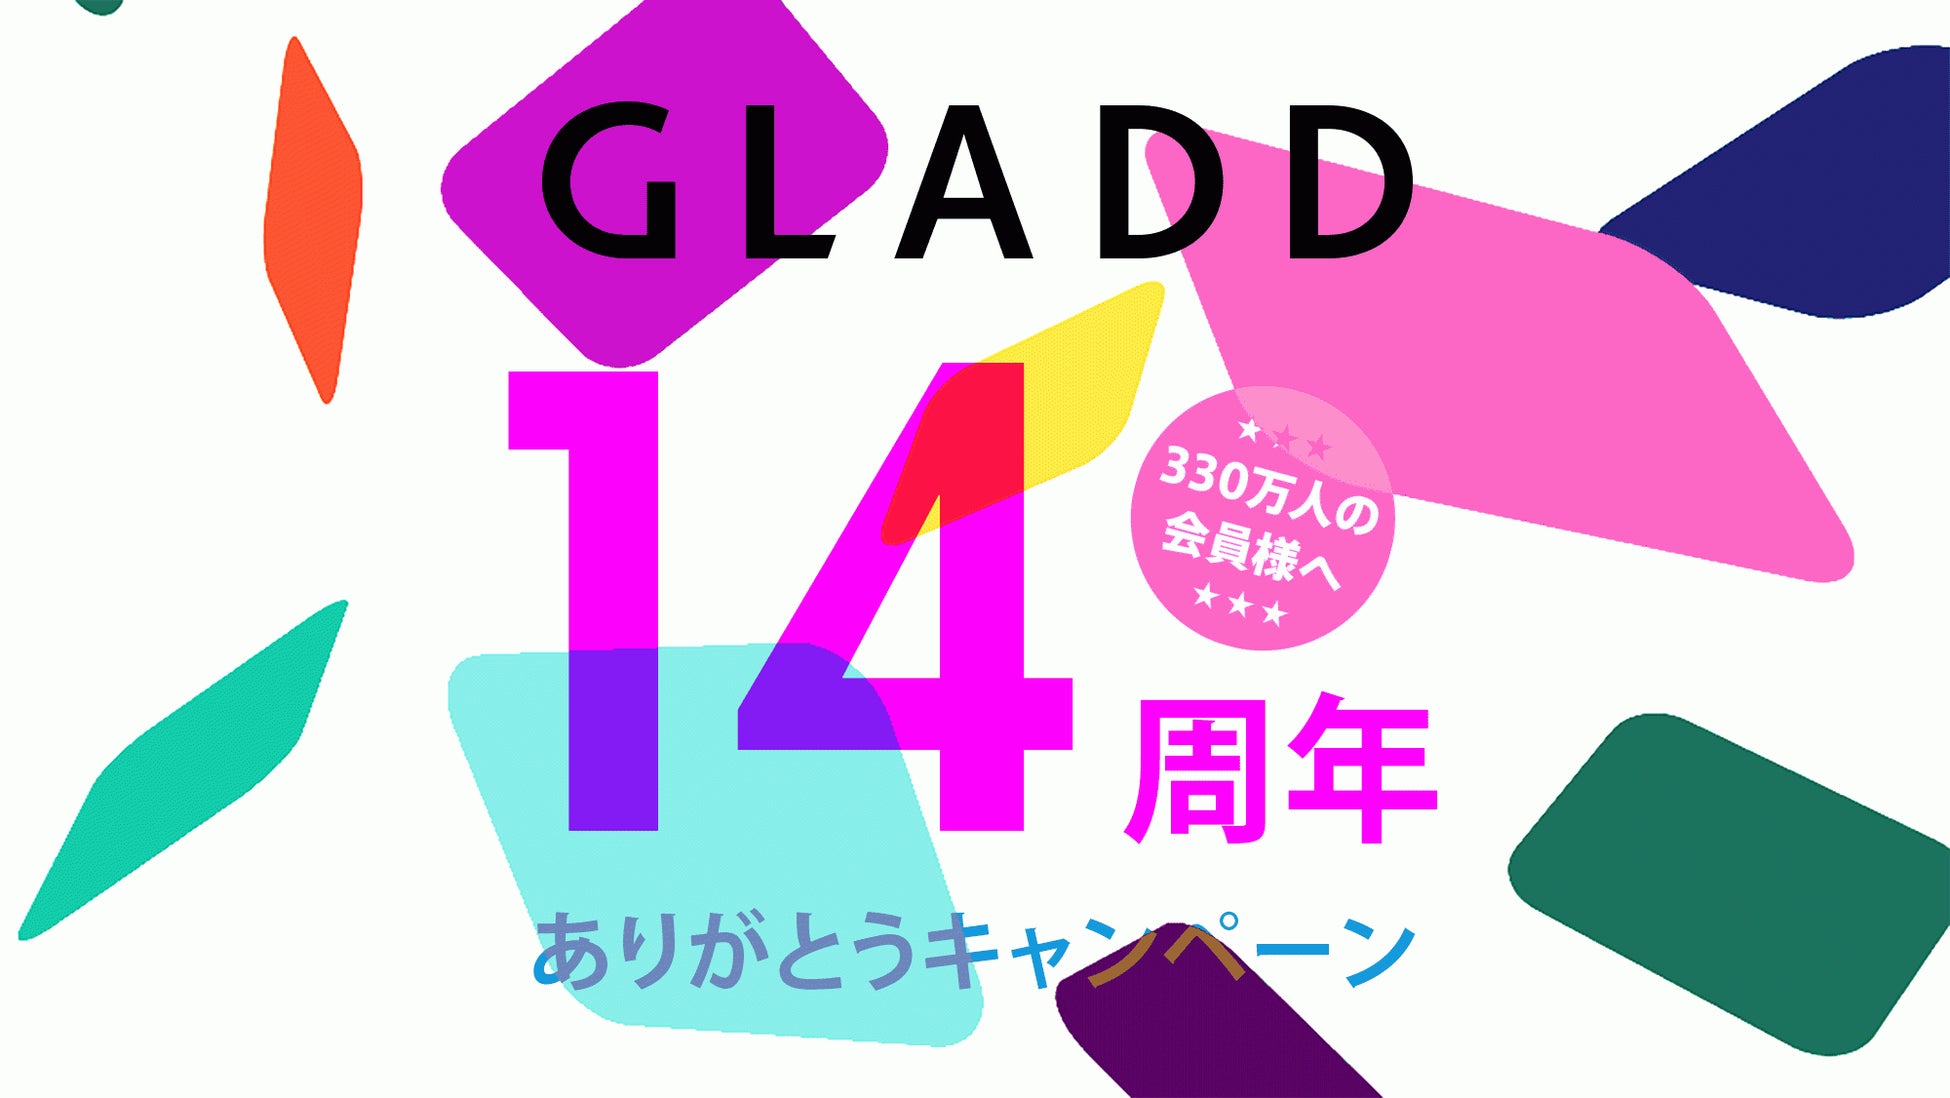 GLADD 14TH ANNIVERSARY CAMPAIGN